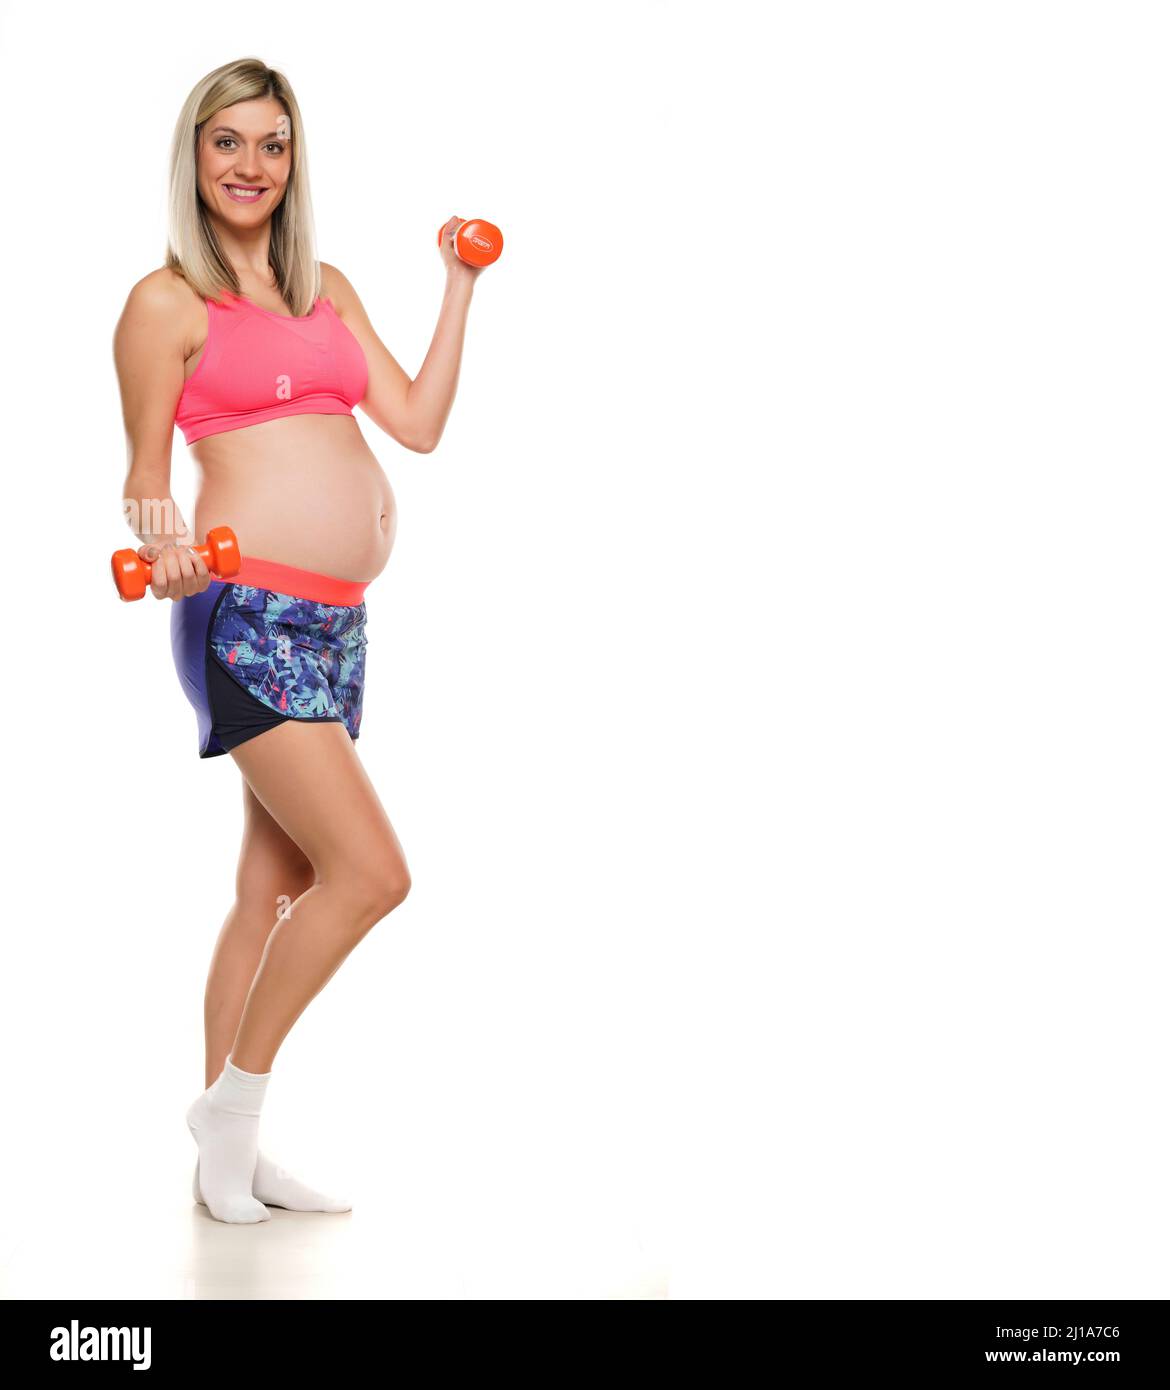 Femme enceinte souriante levant des poids sur un fond blanc Banque D'Images